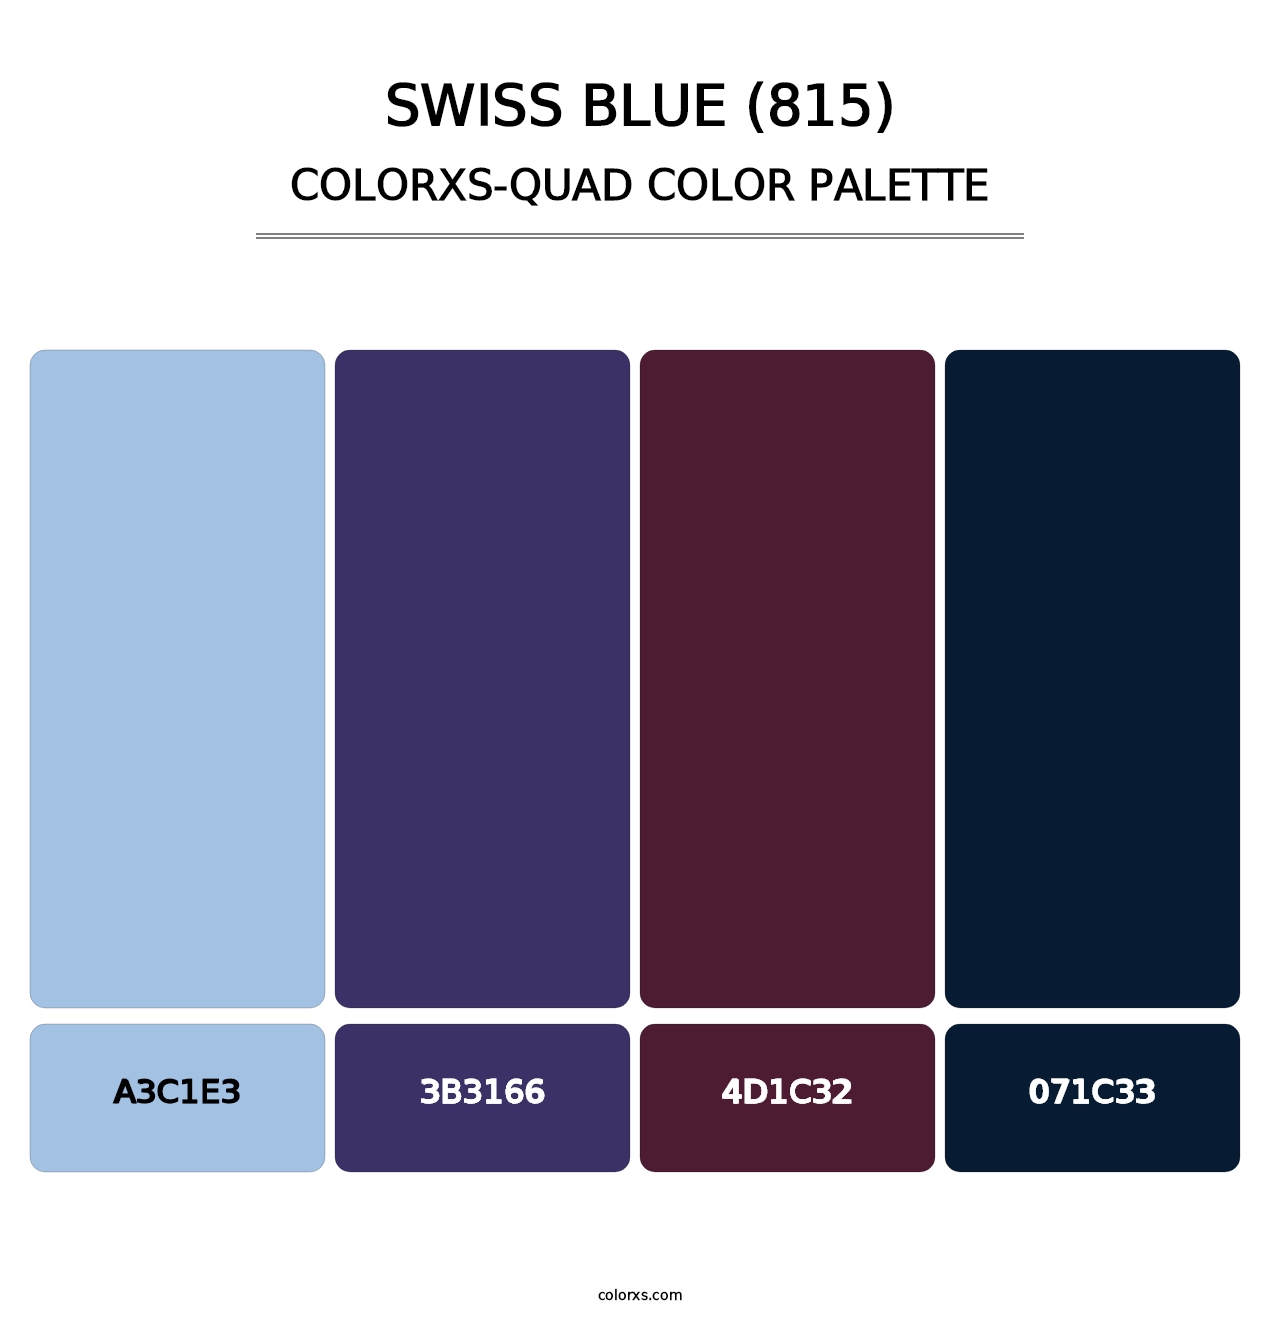 Swiss Blue (815) - Colorxs Quad Palette